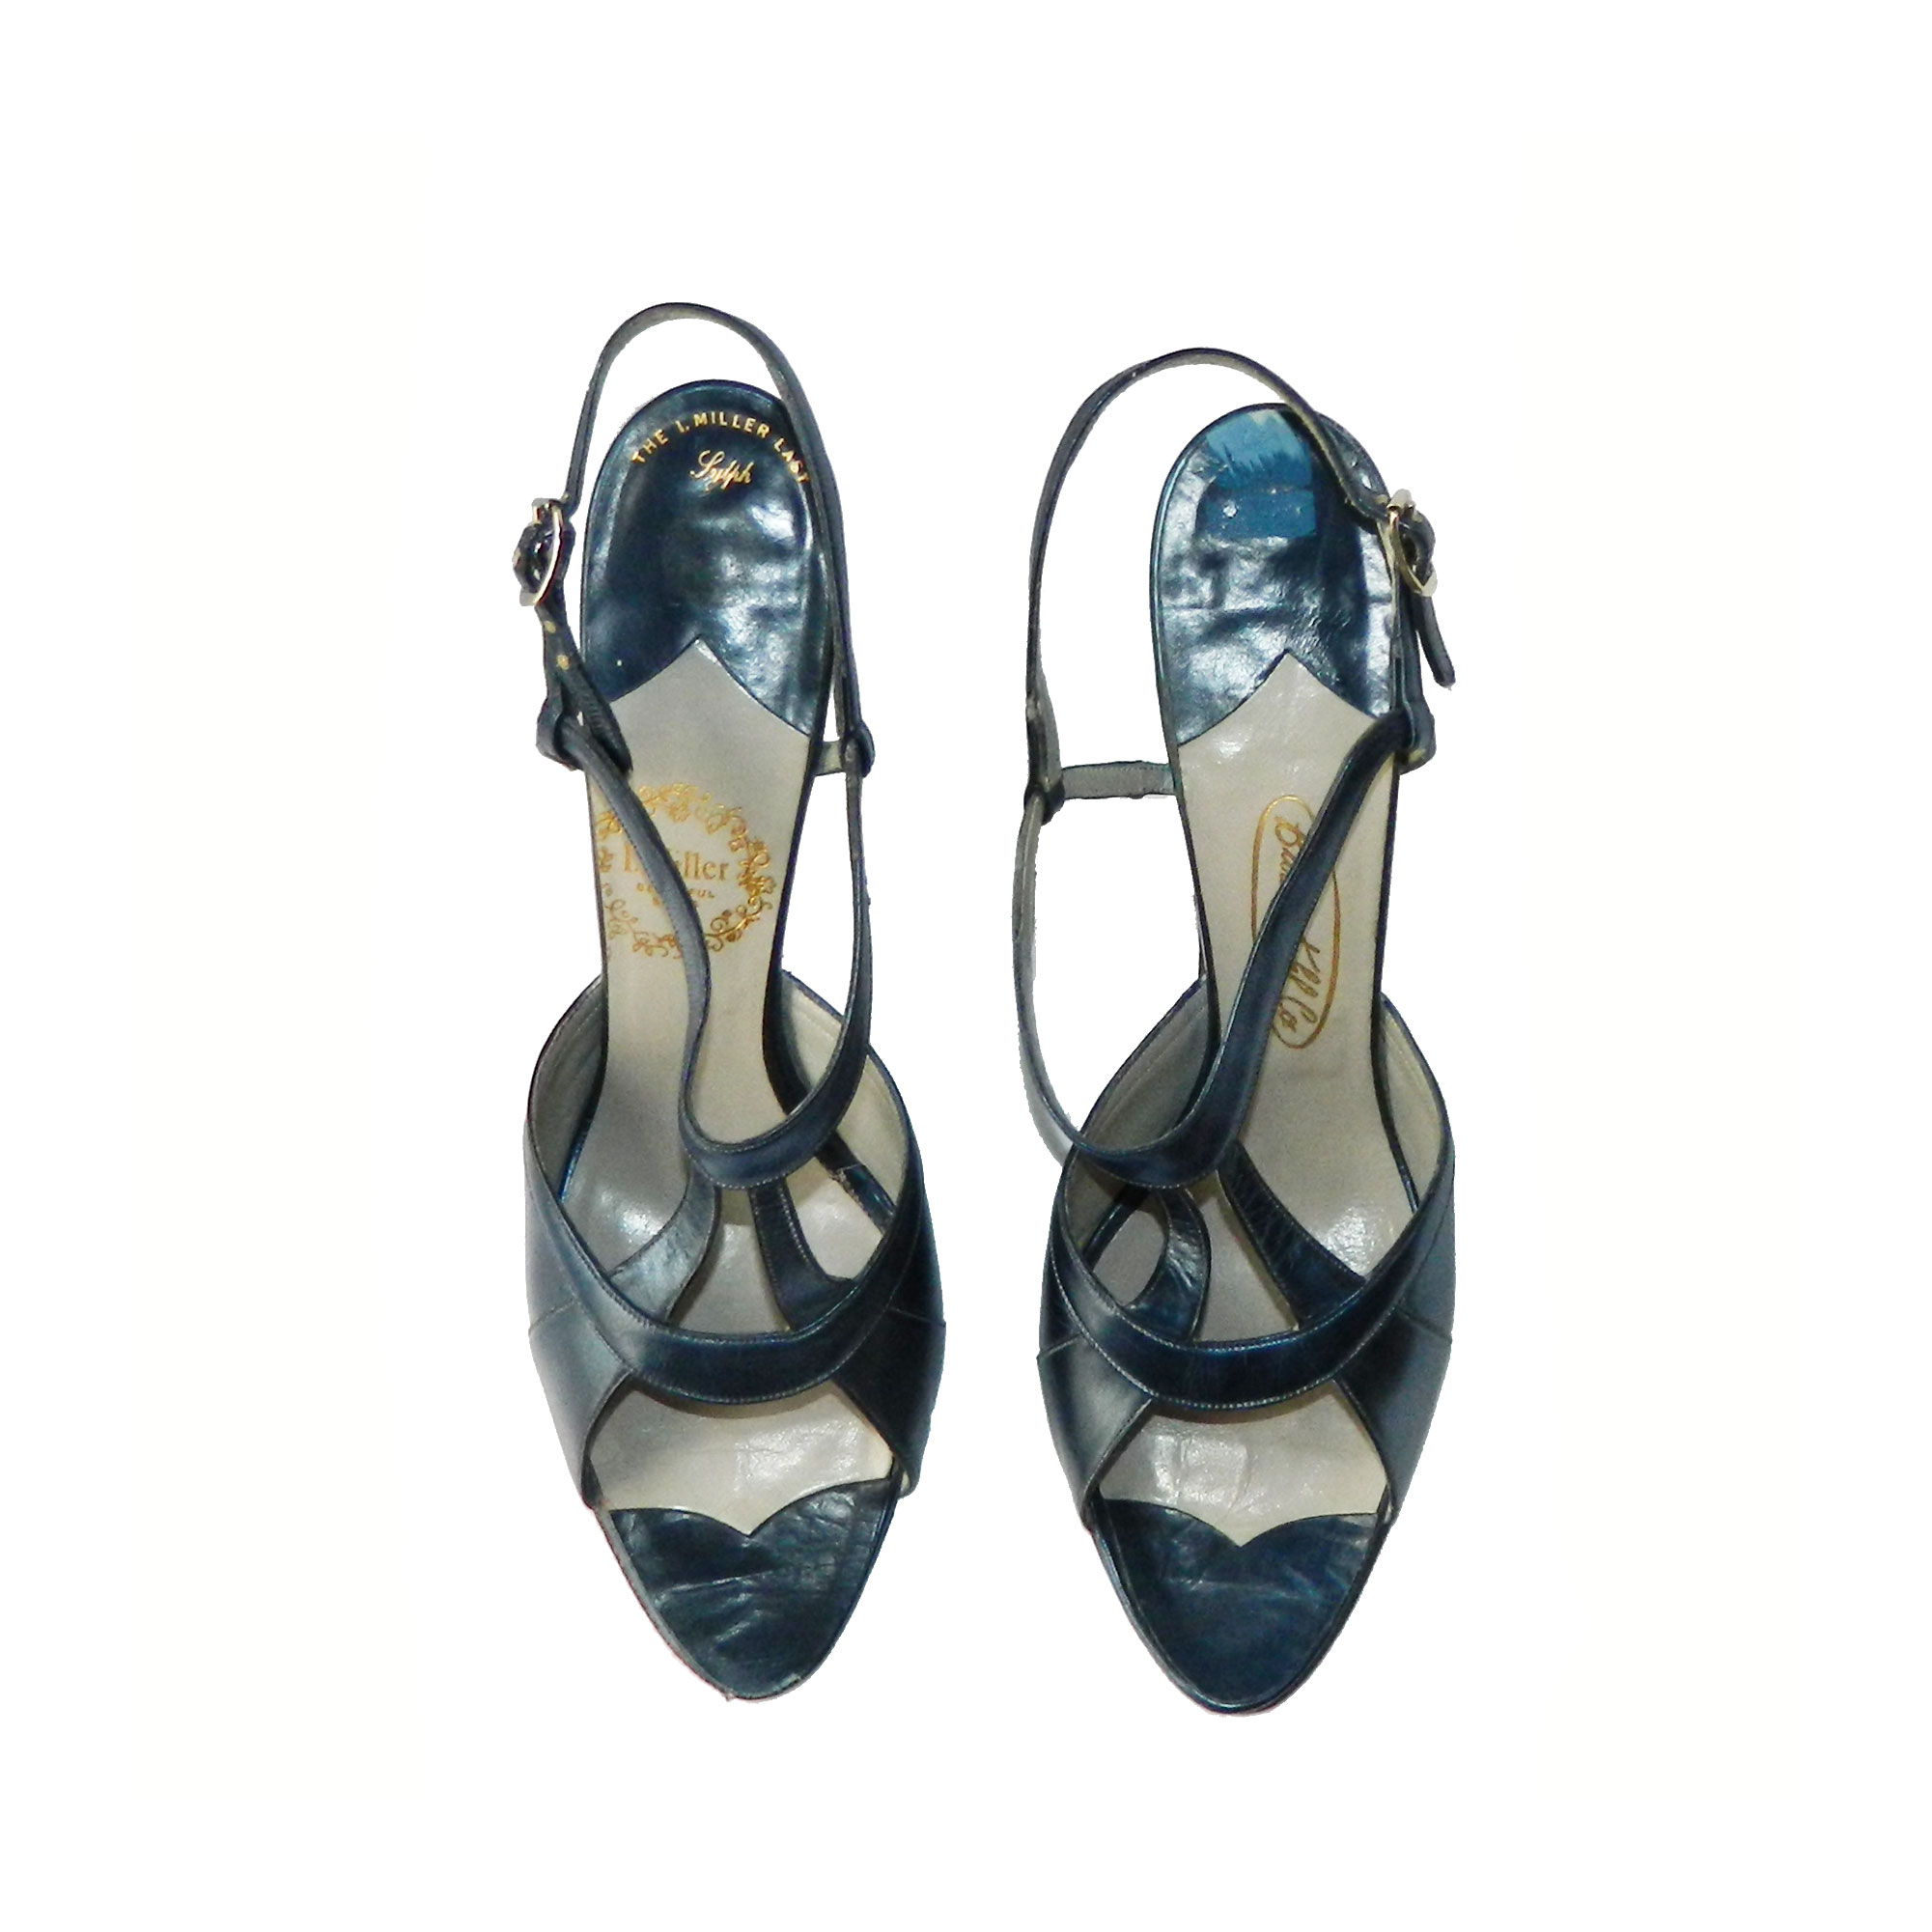 1950s blue stiletto shoes